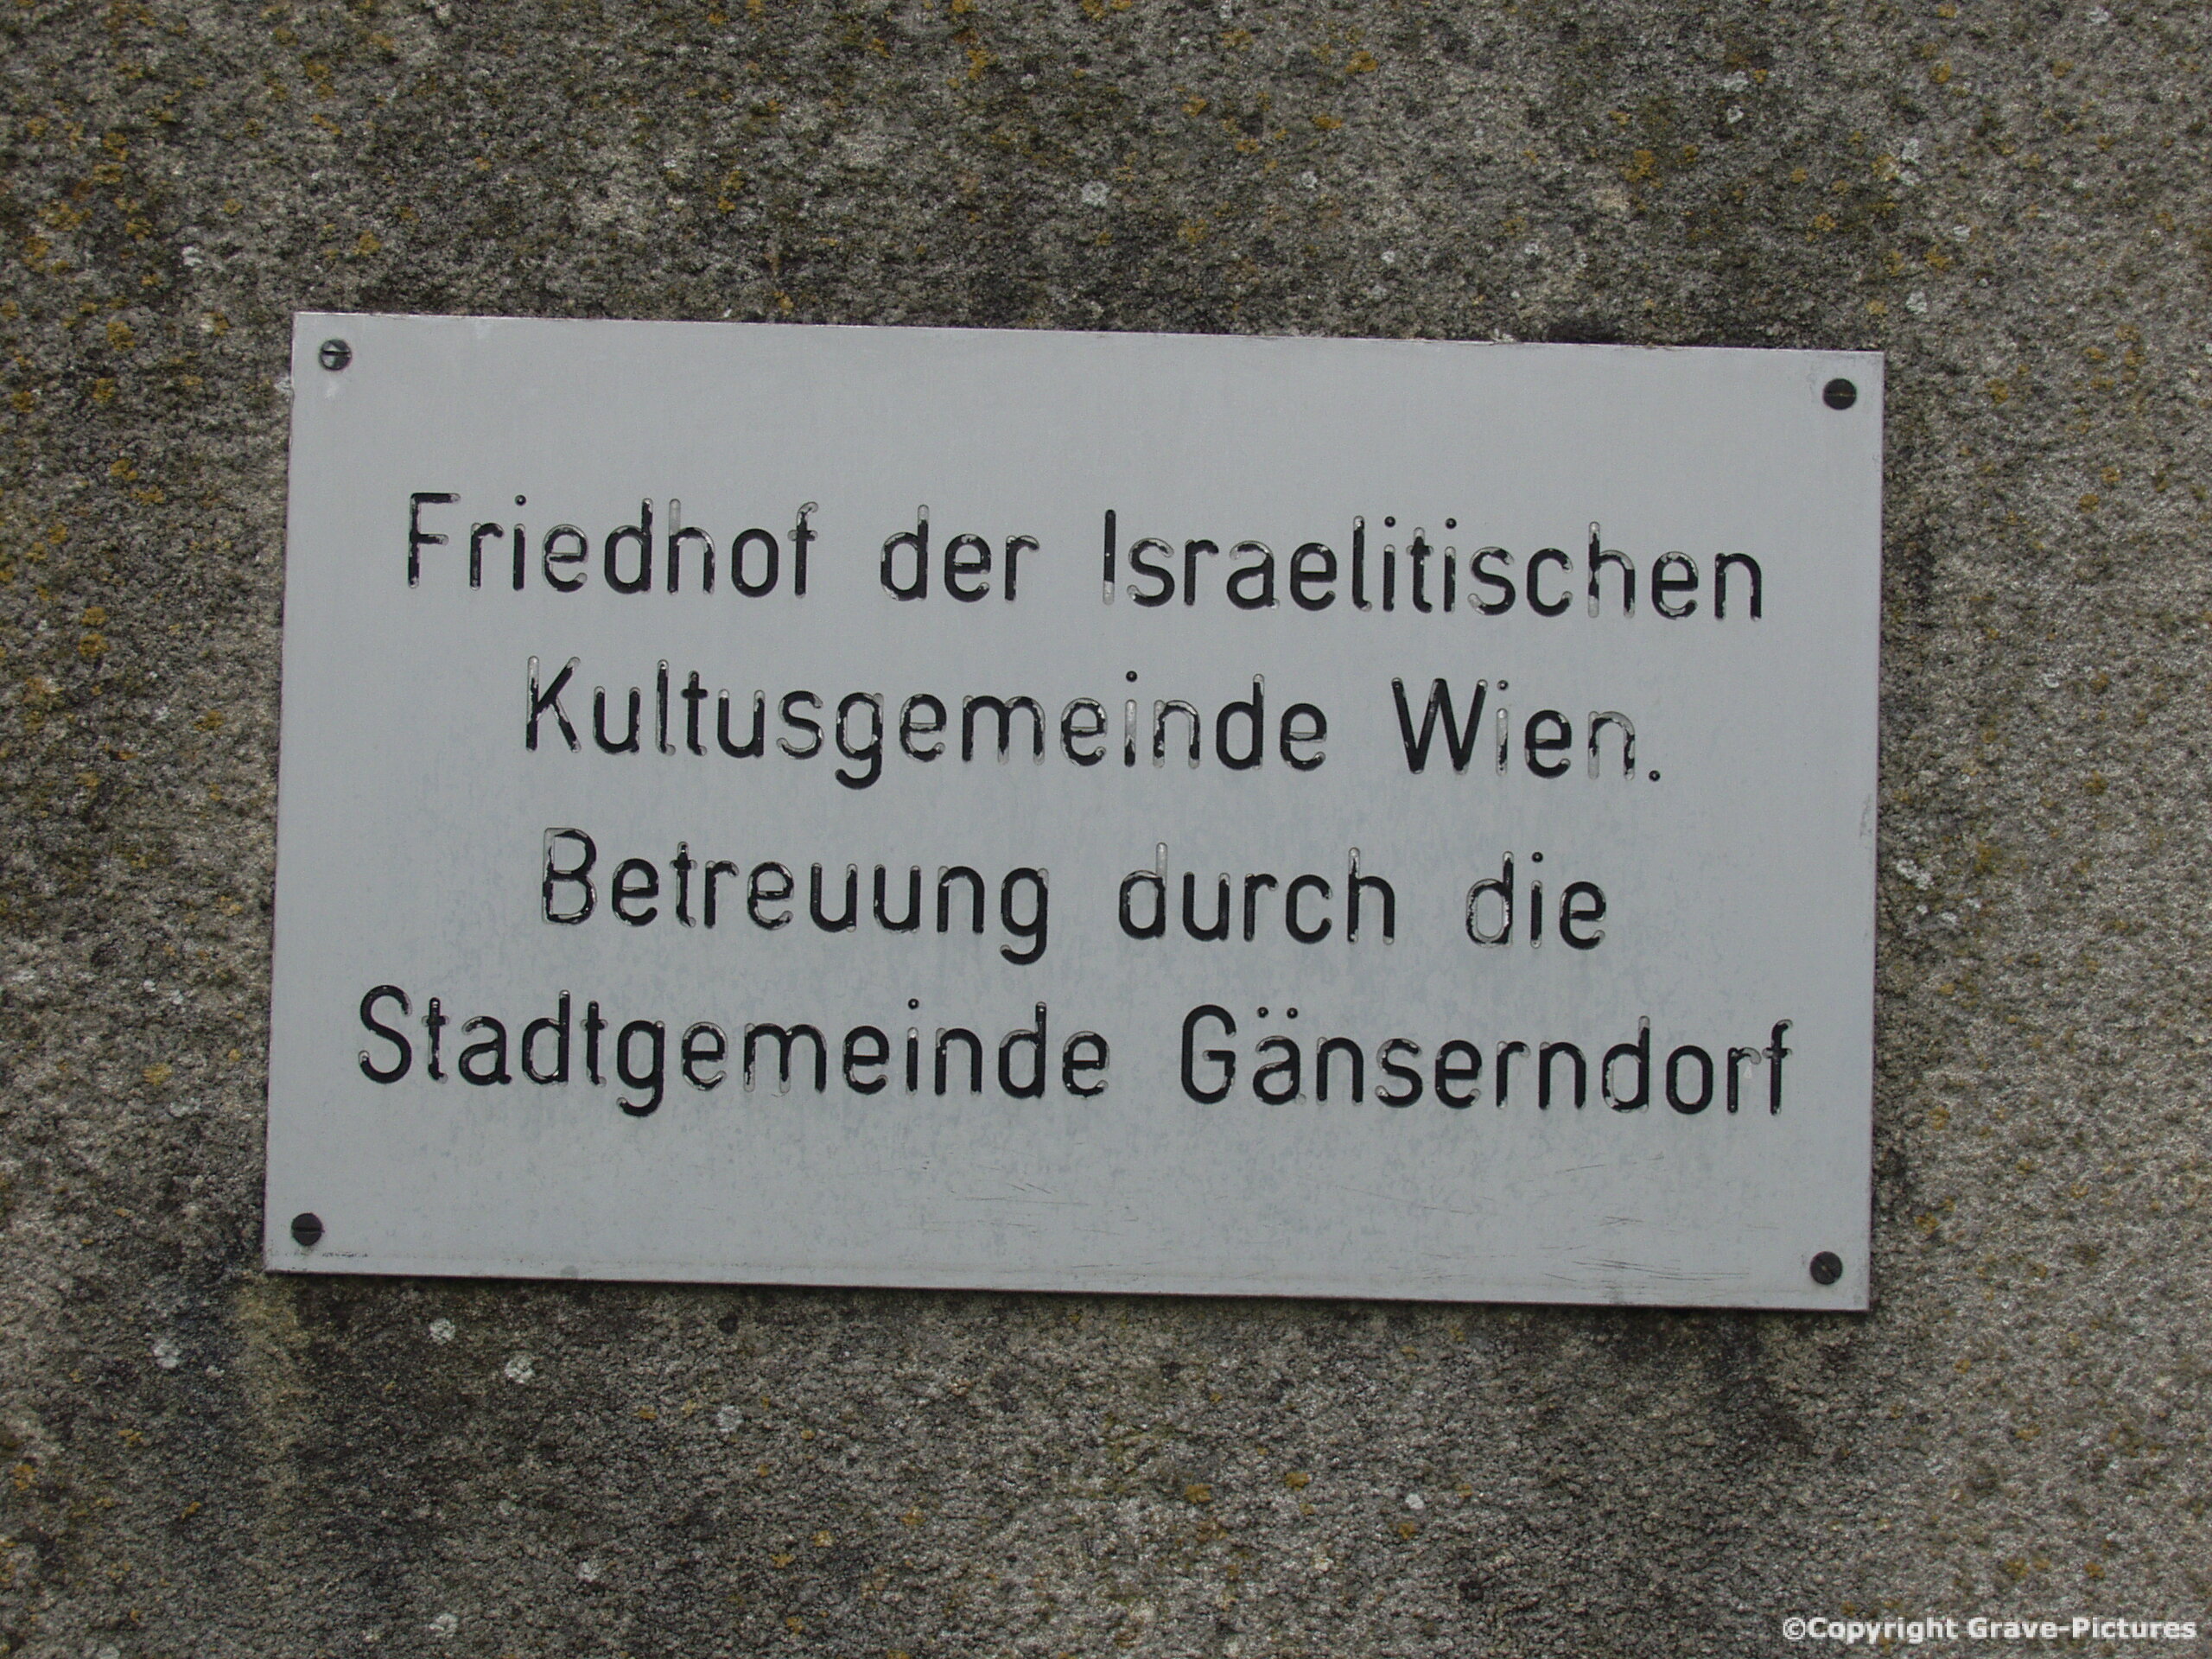 Friedhof der Israelitischen Kultusgemeinde Wien